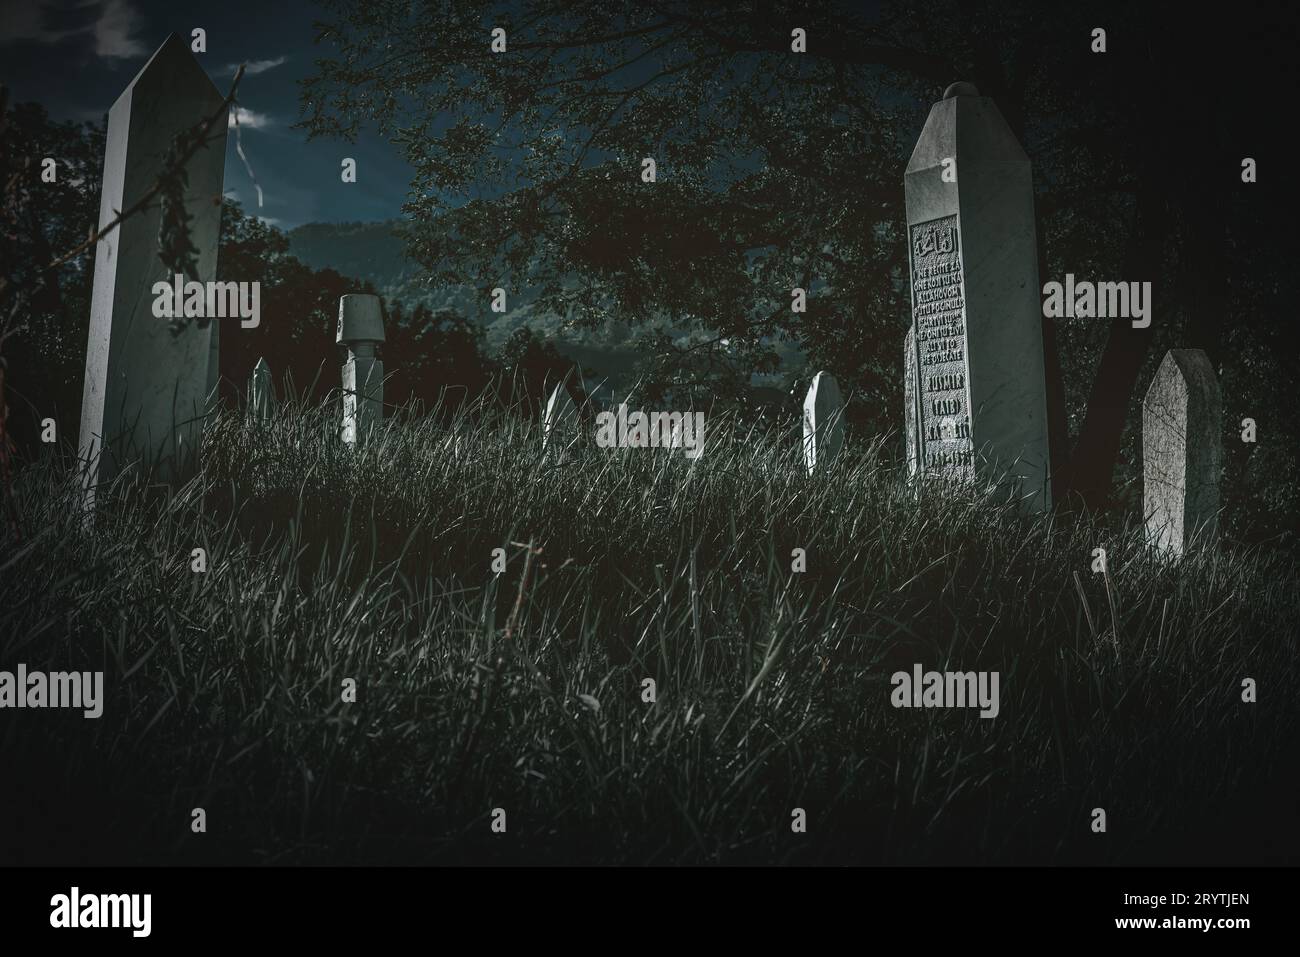 Ein unheimlicher Friedhof, der vor einem tiefblauen Nachthimmel steht und eine gruselige Atmosphäre schafft Stockfoto